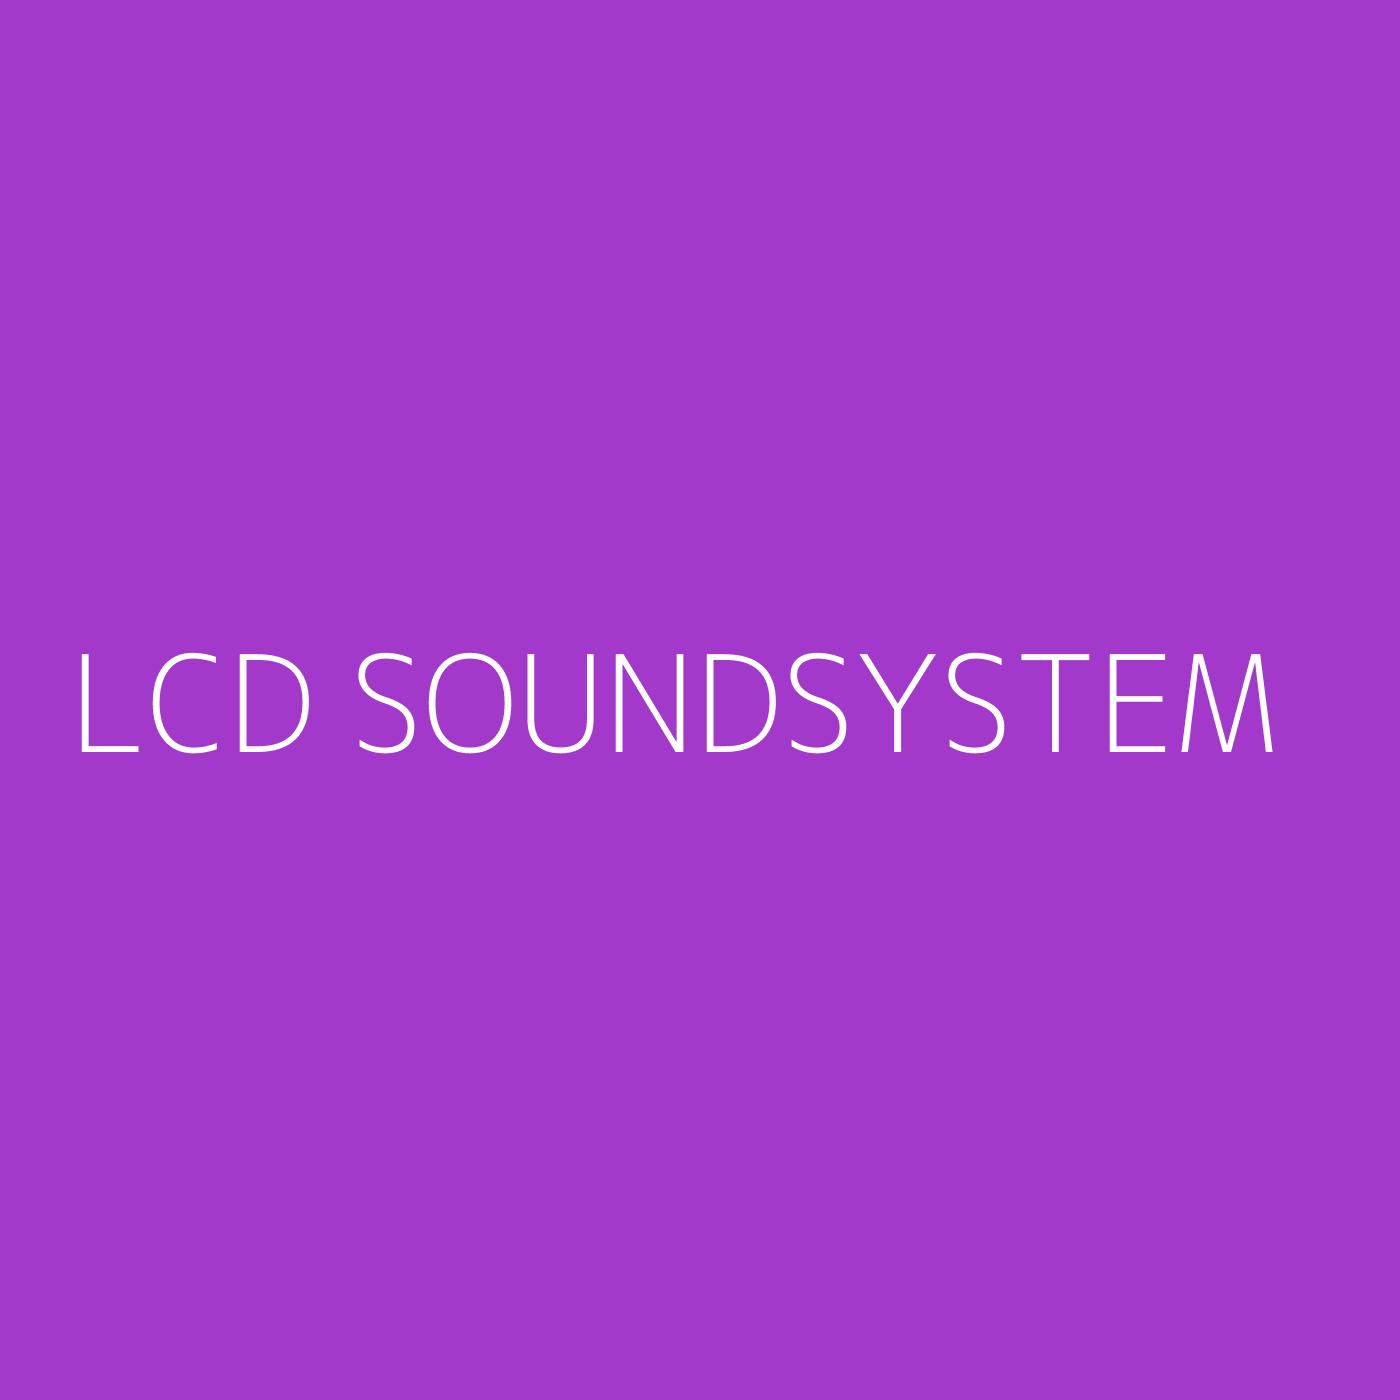 LCD Soundsystem Playlist Artwork